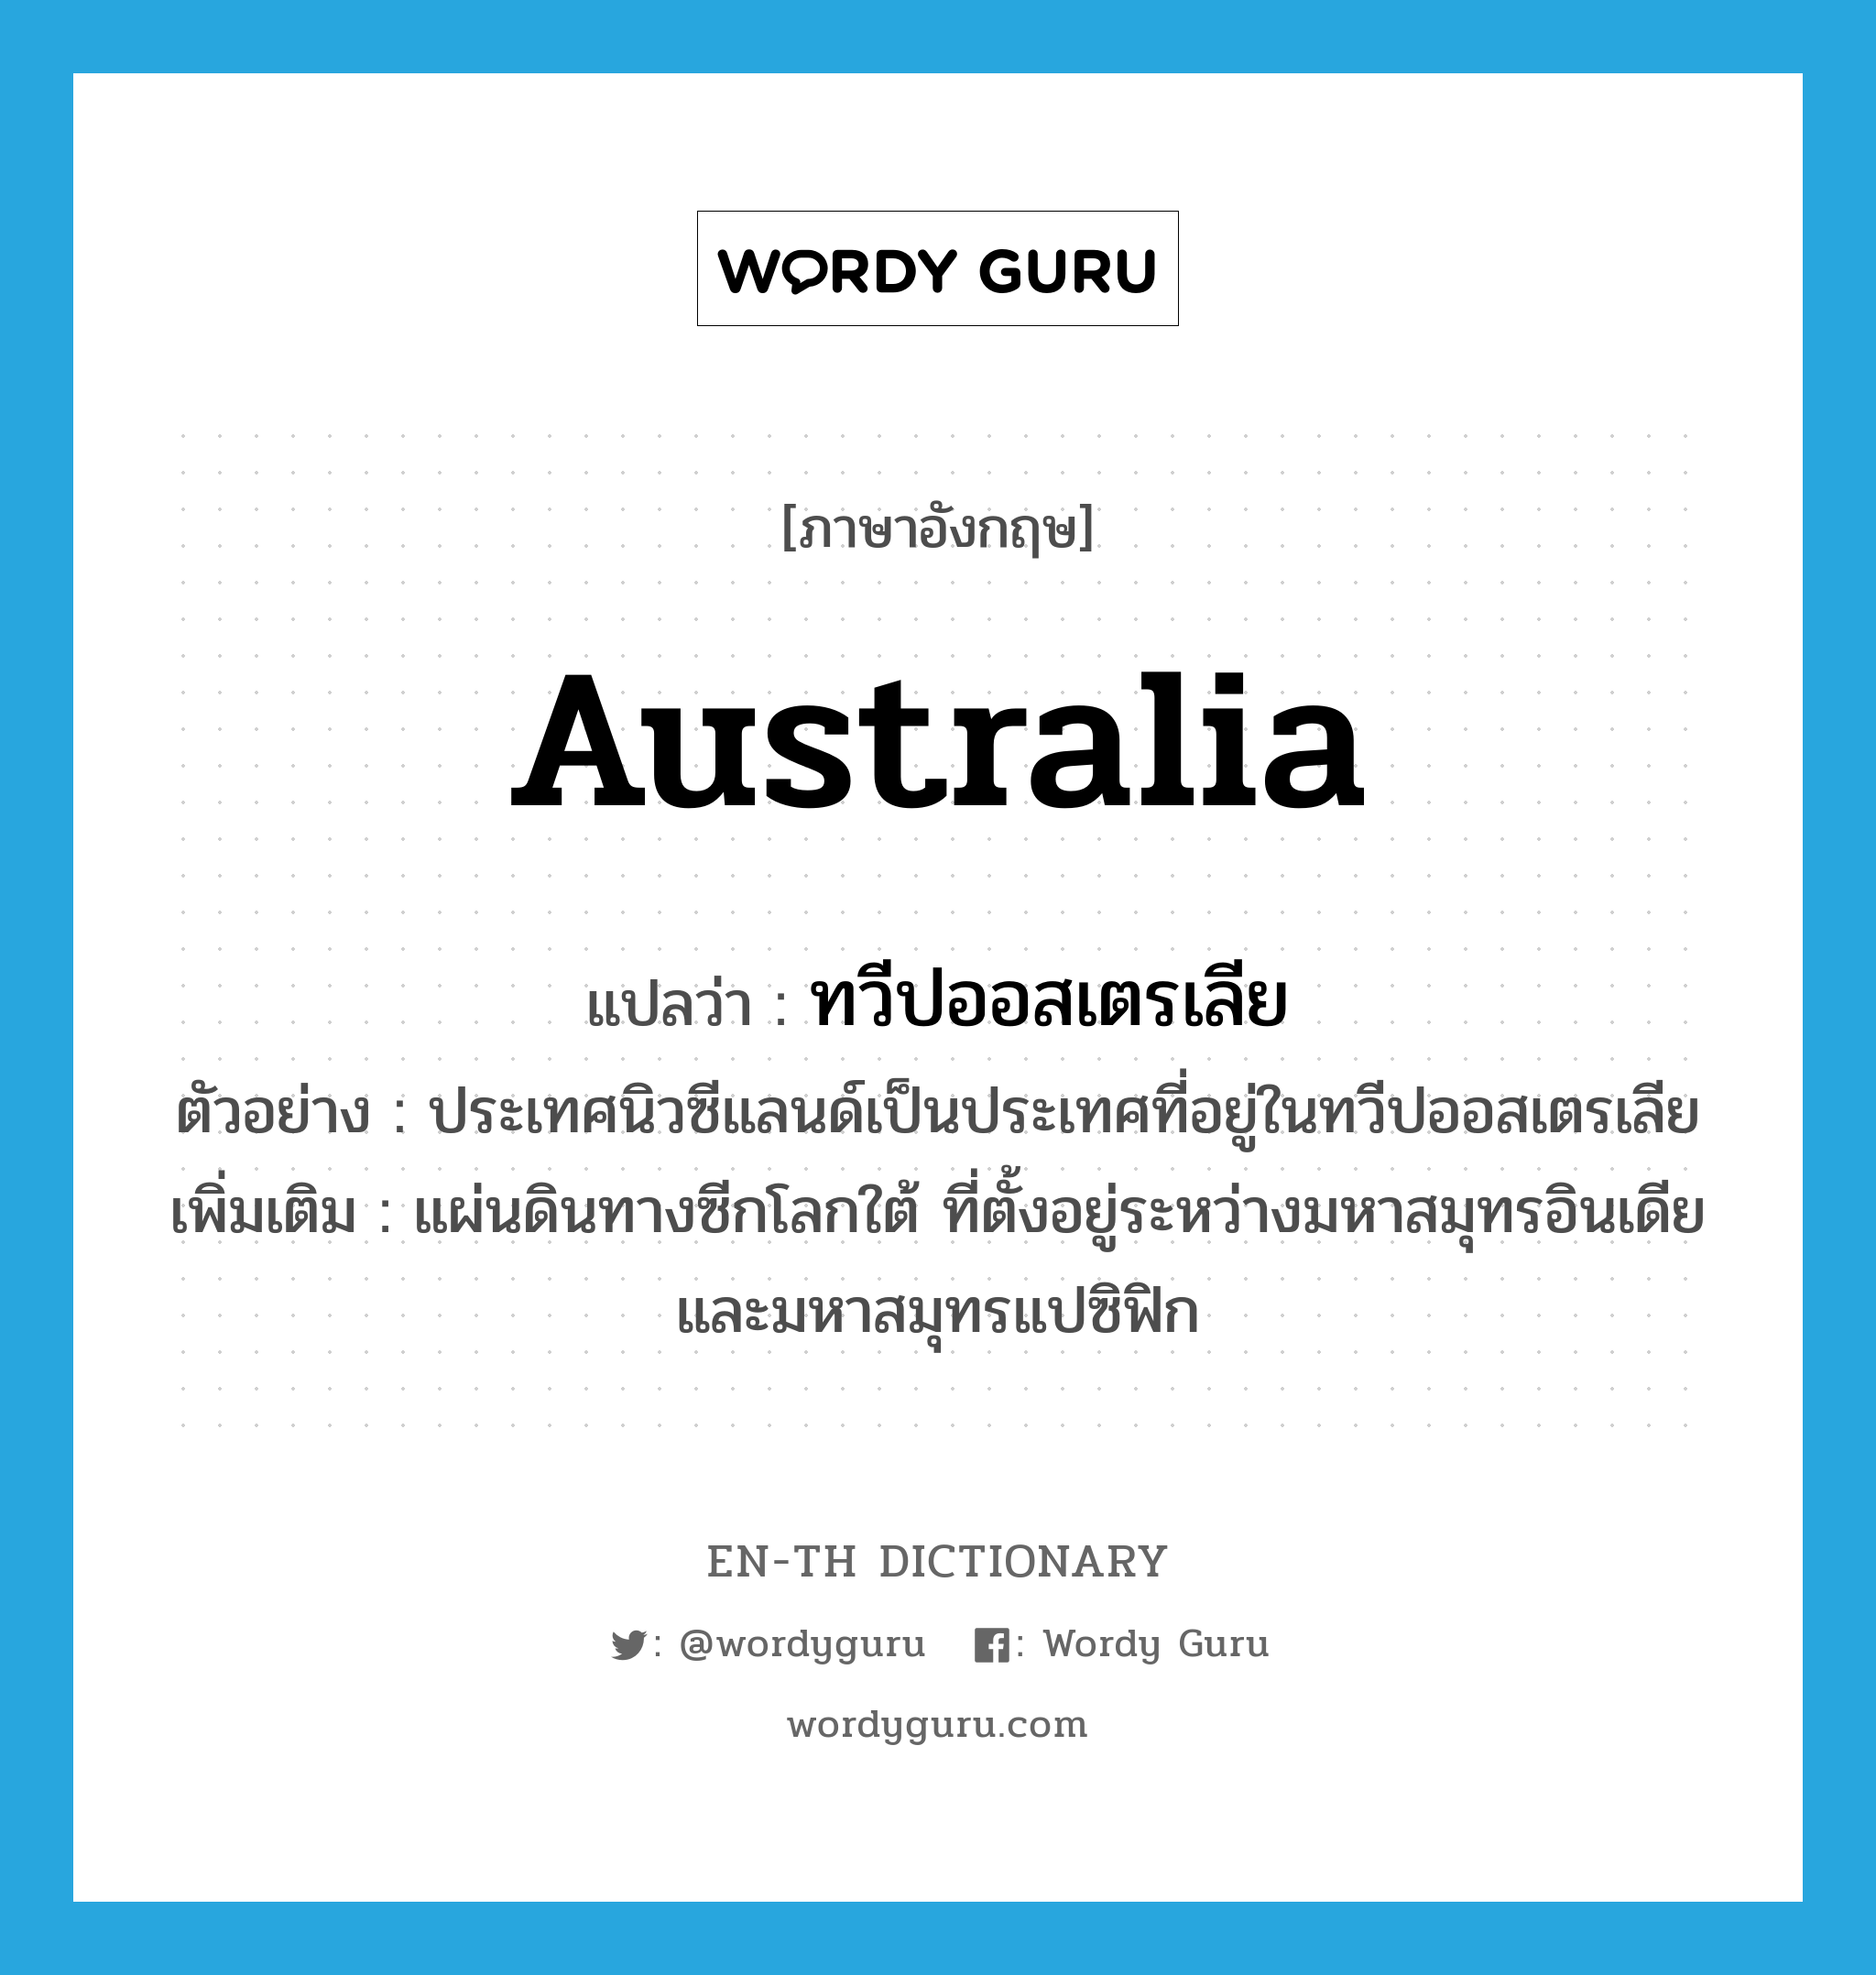 Australia แปลว่า?, คำศัพท์ภาษาอังกฤษ Australia แปลว่า ทวีปออสเตรเลีย ประเภท N ตัวอย่าง ประเทศนิวซีแลนด์เป็นประเทศที่อยู่ในทวีปออสเตรเลีย เพิ่มเติม แผ่นดินทางซีกโลกใต้ ที่ตั้งอยู่ระหว่างมหาสมุทรอินเดียและมหาสมุทรแปซิฟิก หมวด N